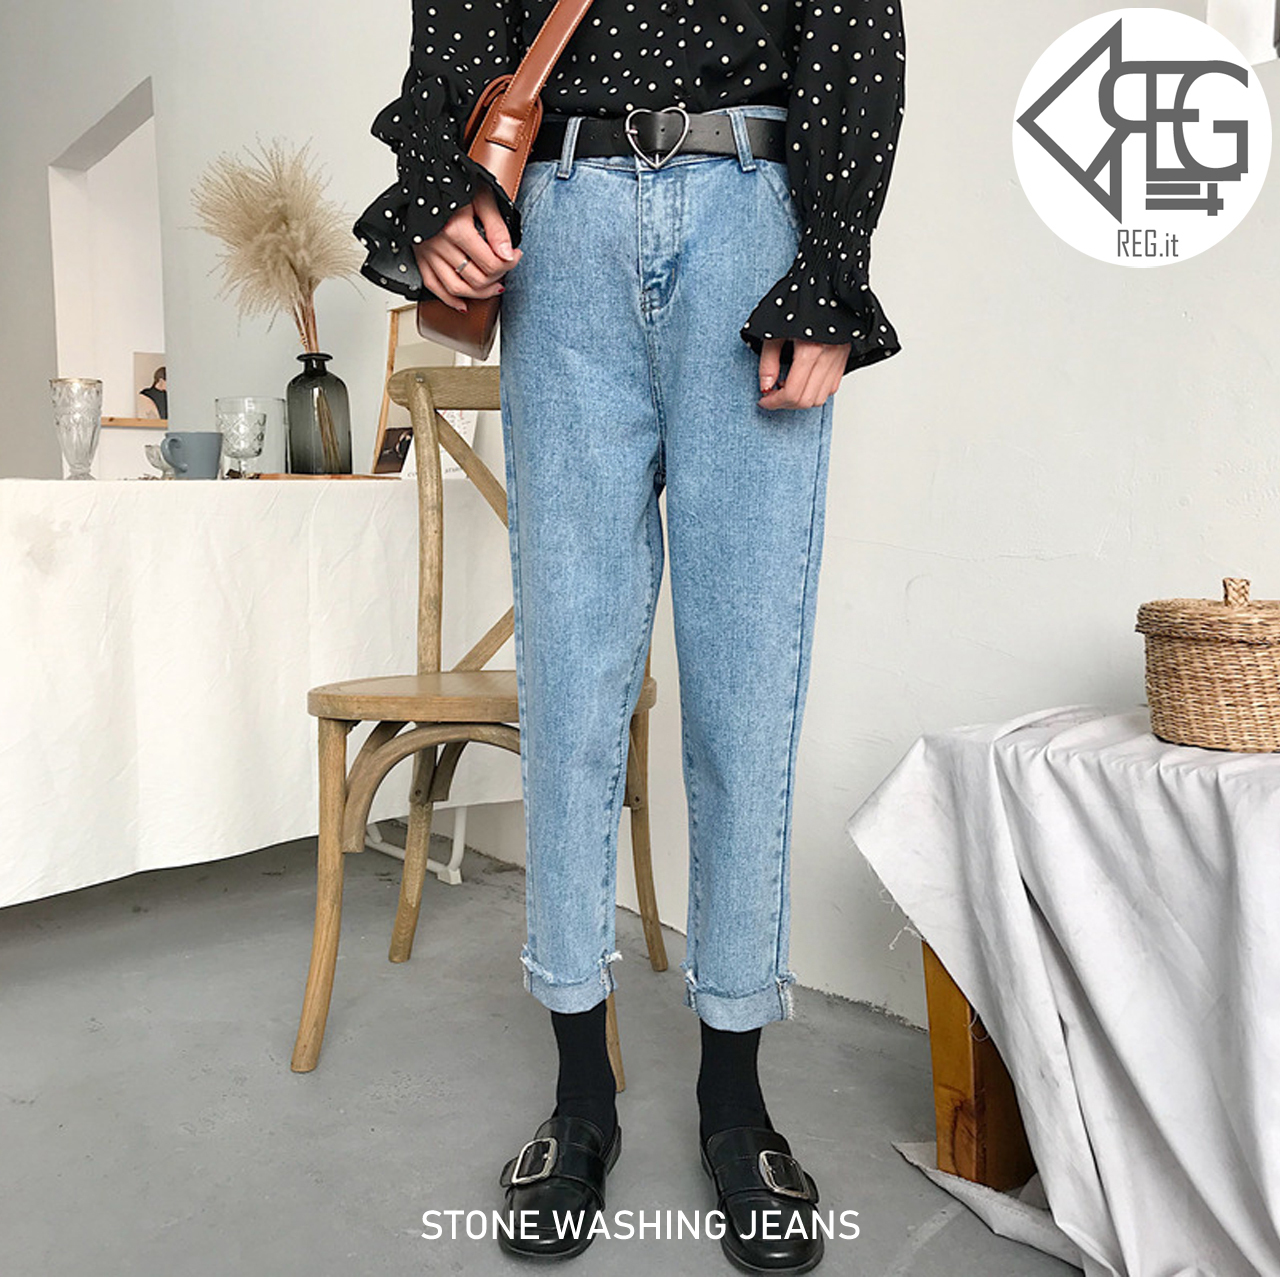 Regit 即納 Stone Washing Jeans 韓国ファッション 韓国服 デニム ジーンズ かわいいデニム プチプラコーデ 古着風 Regit